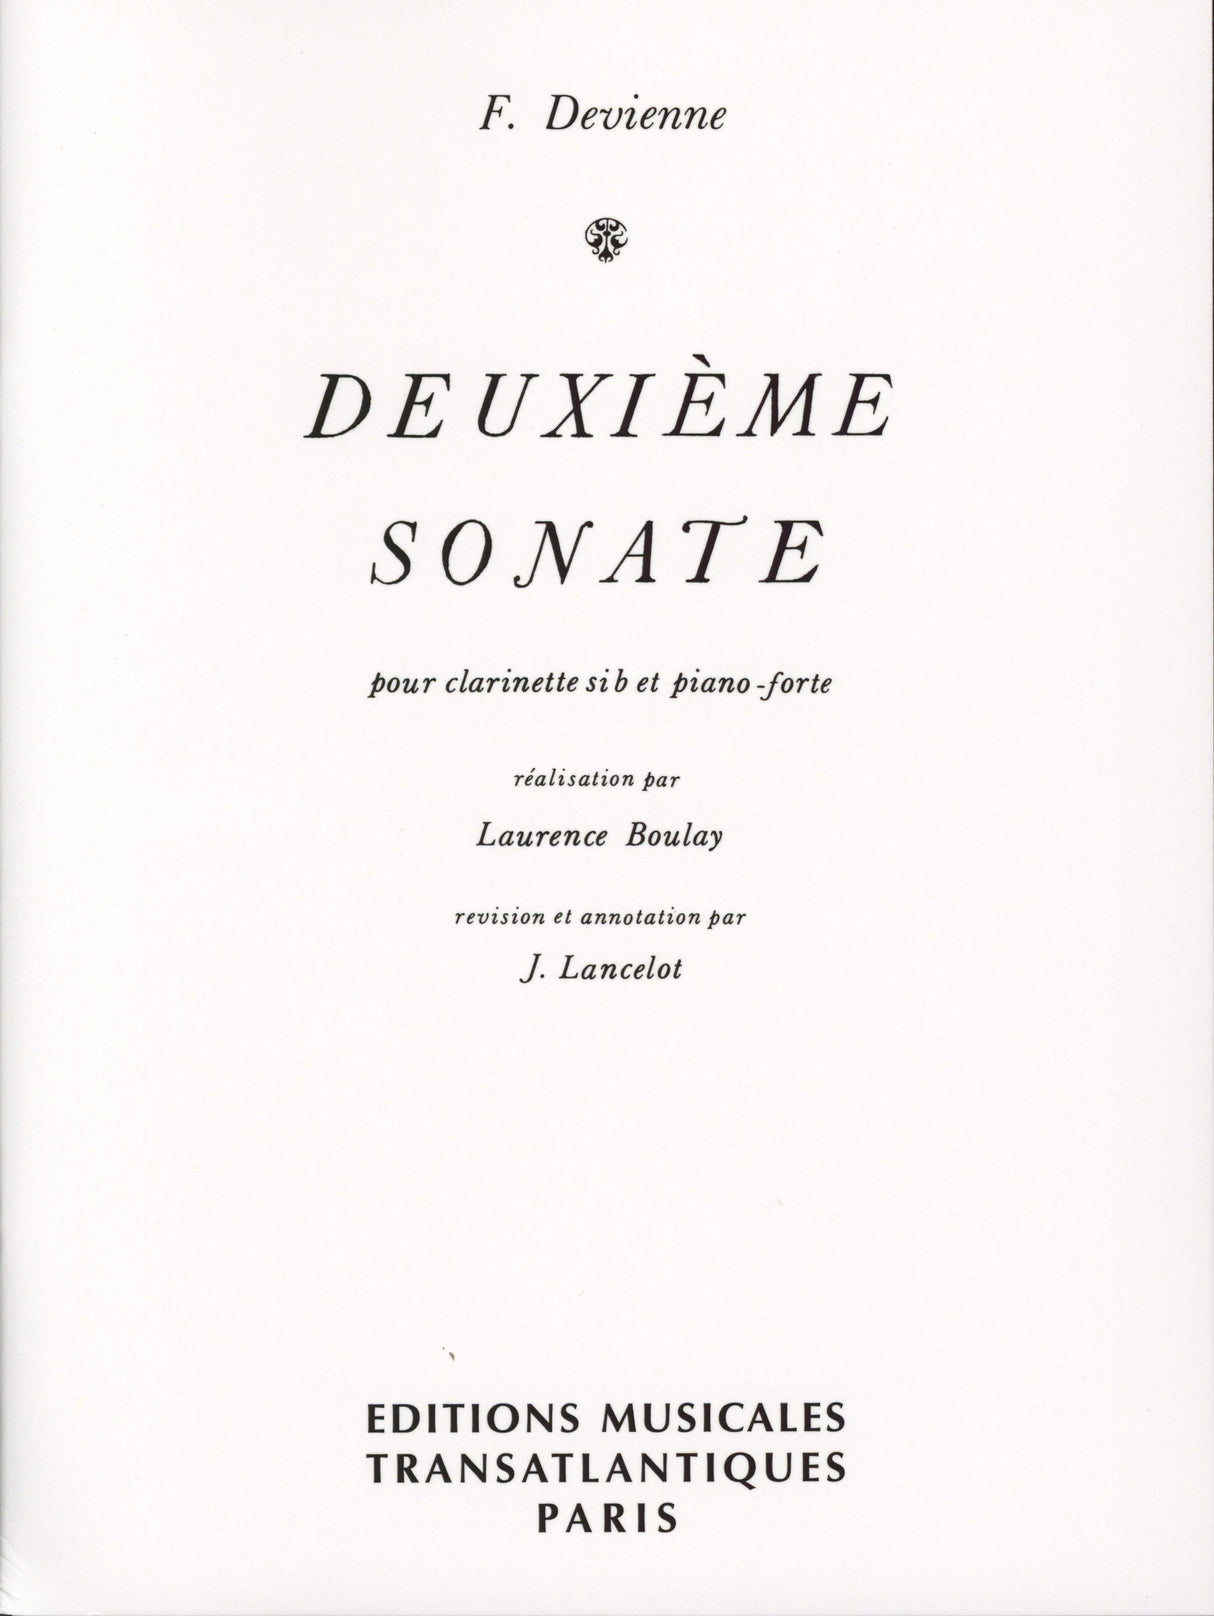 Devienne: Clarinet Sonata No. 2 in E-flat Major